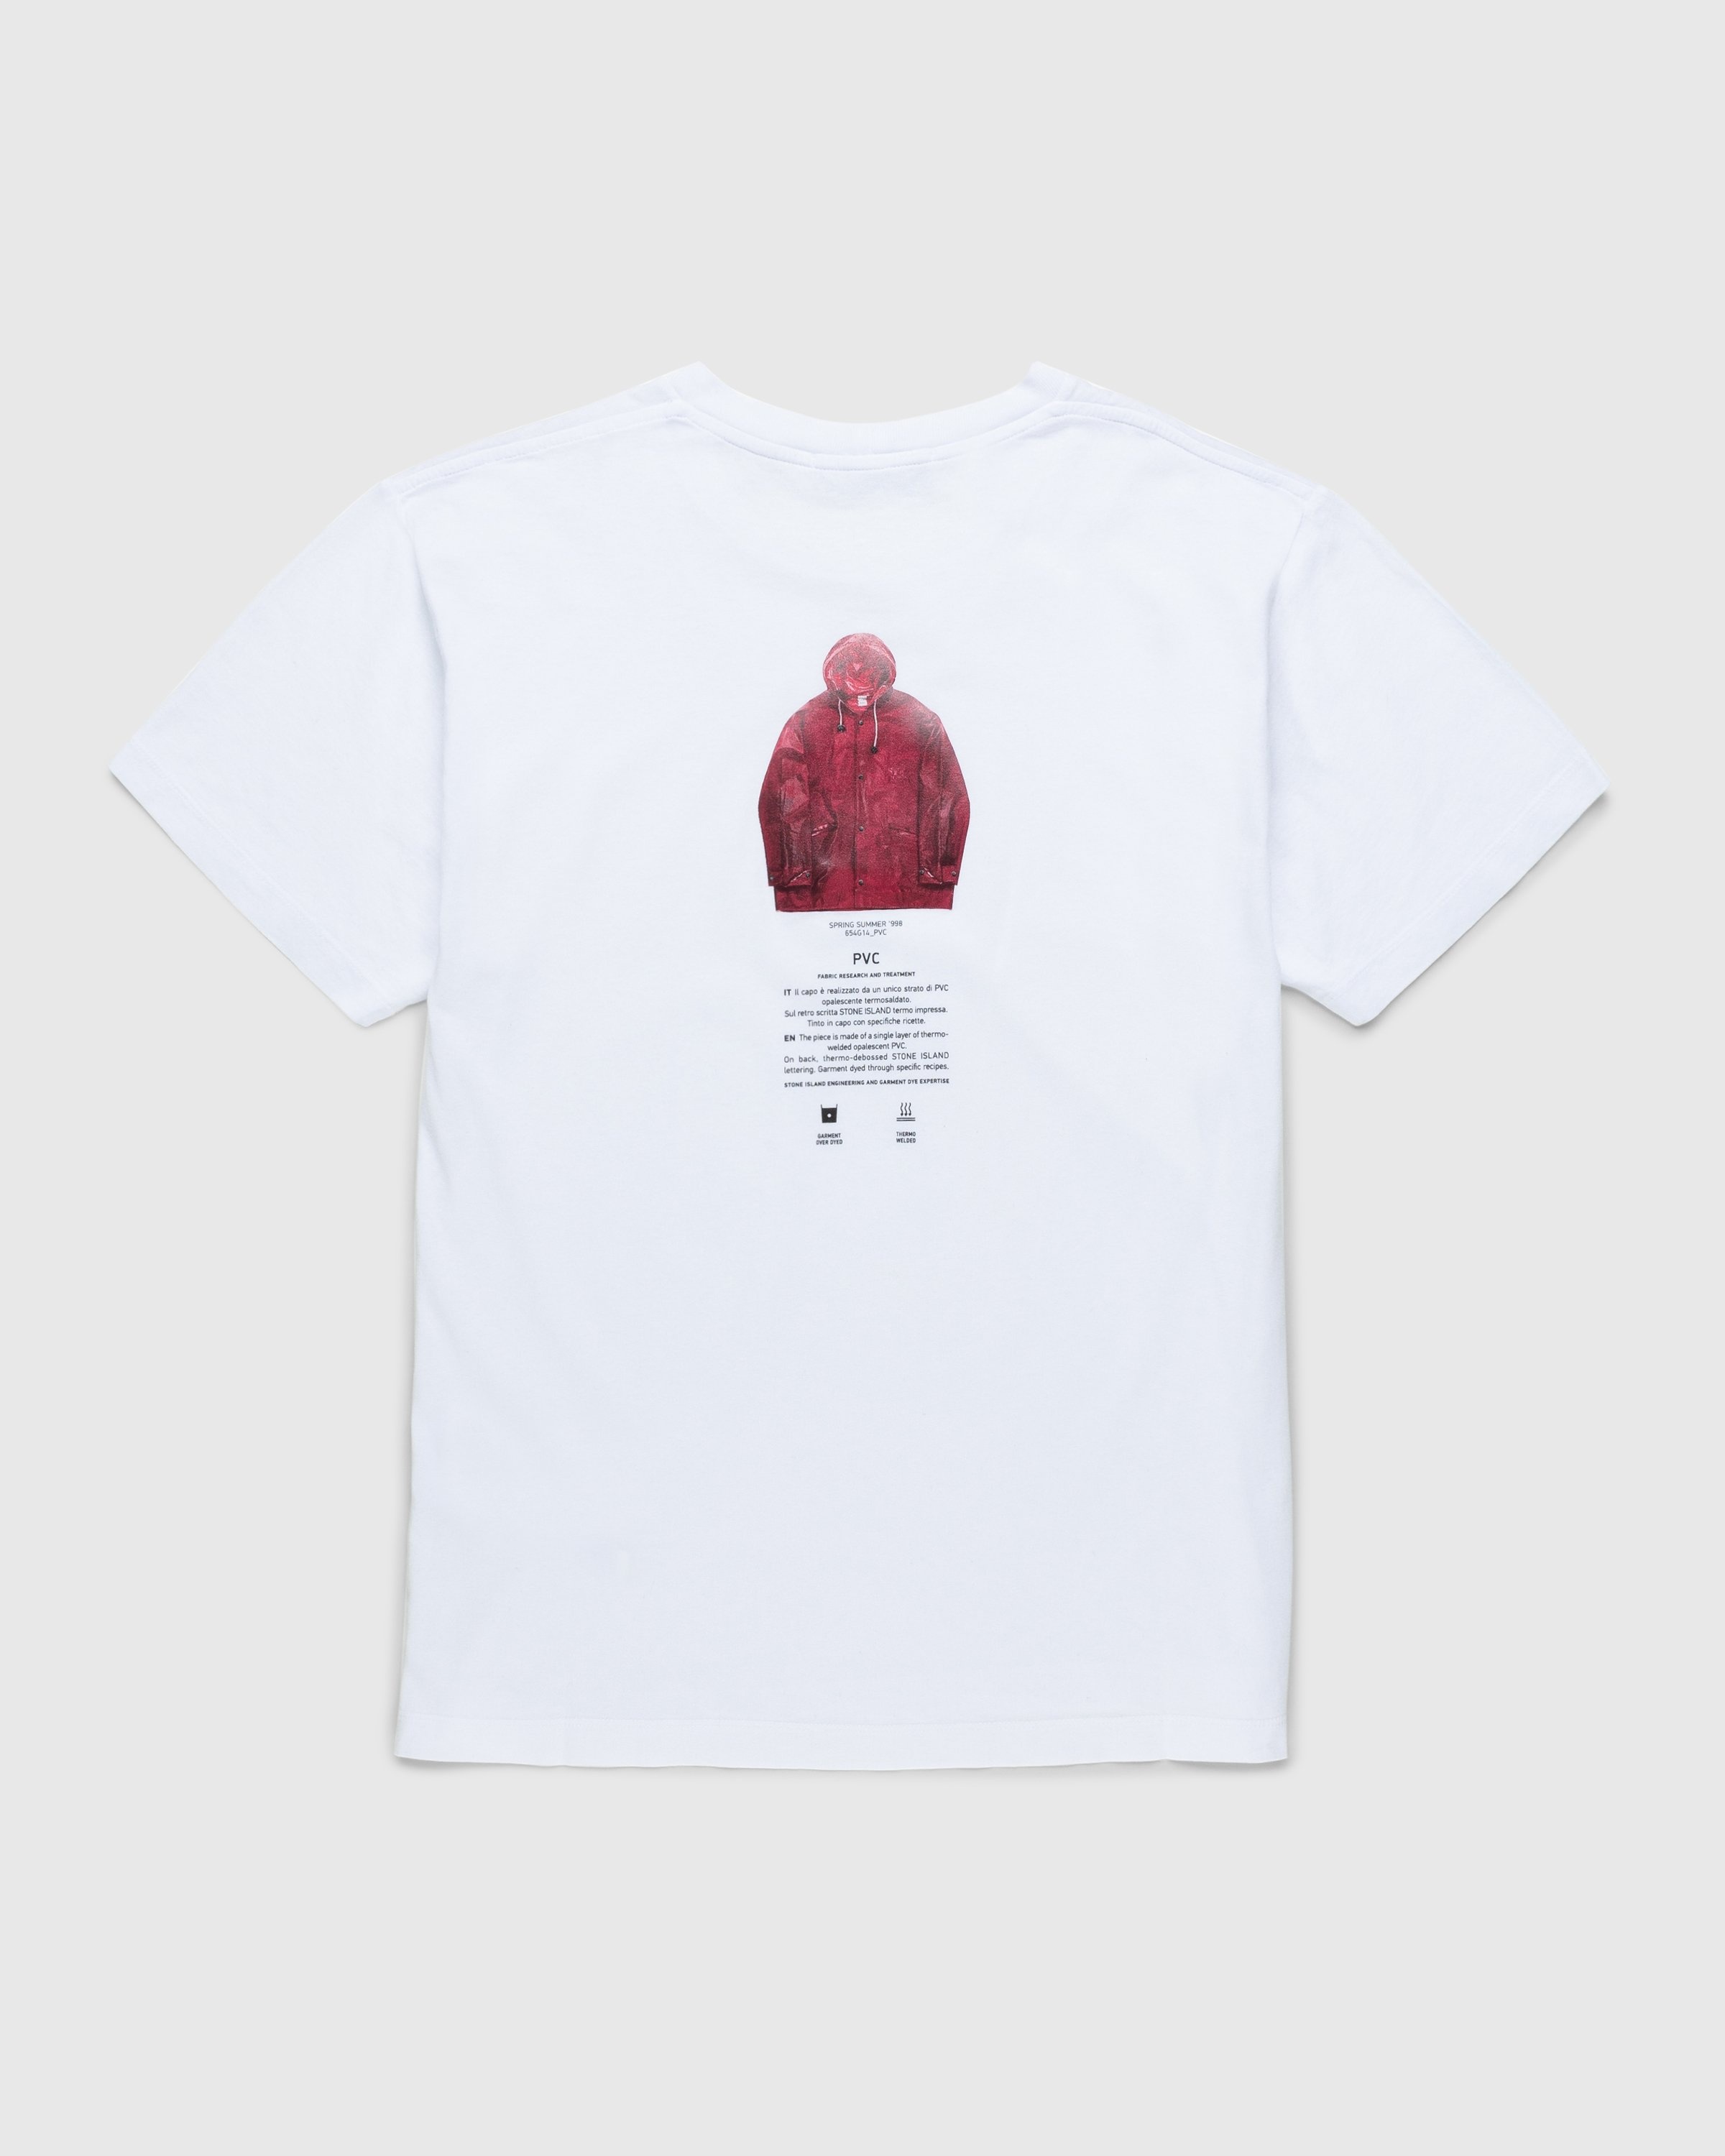 Stone Island – T-Shirt White 2NS91 | Highsnobiety Shop